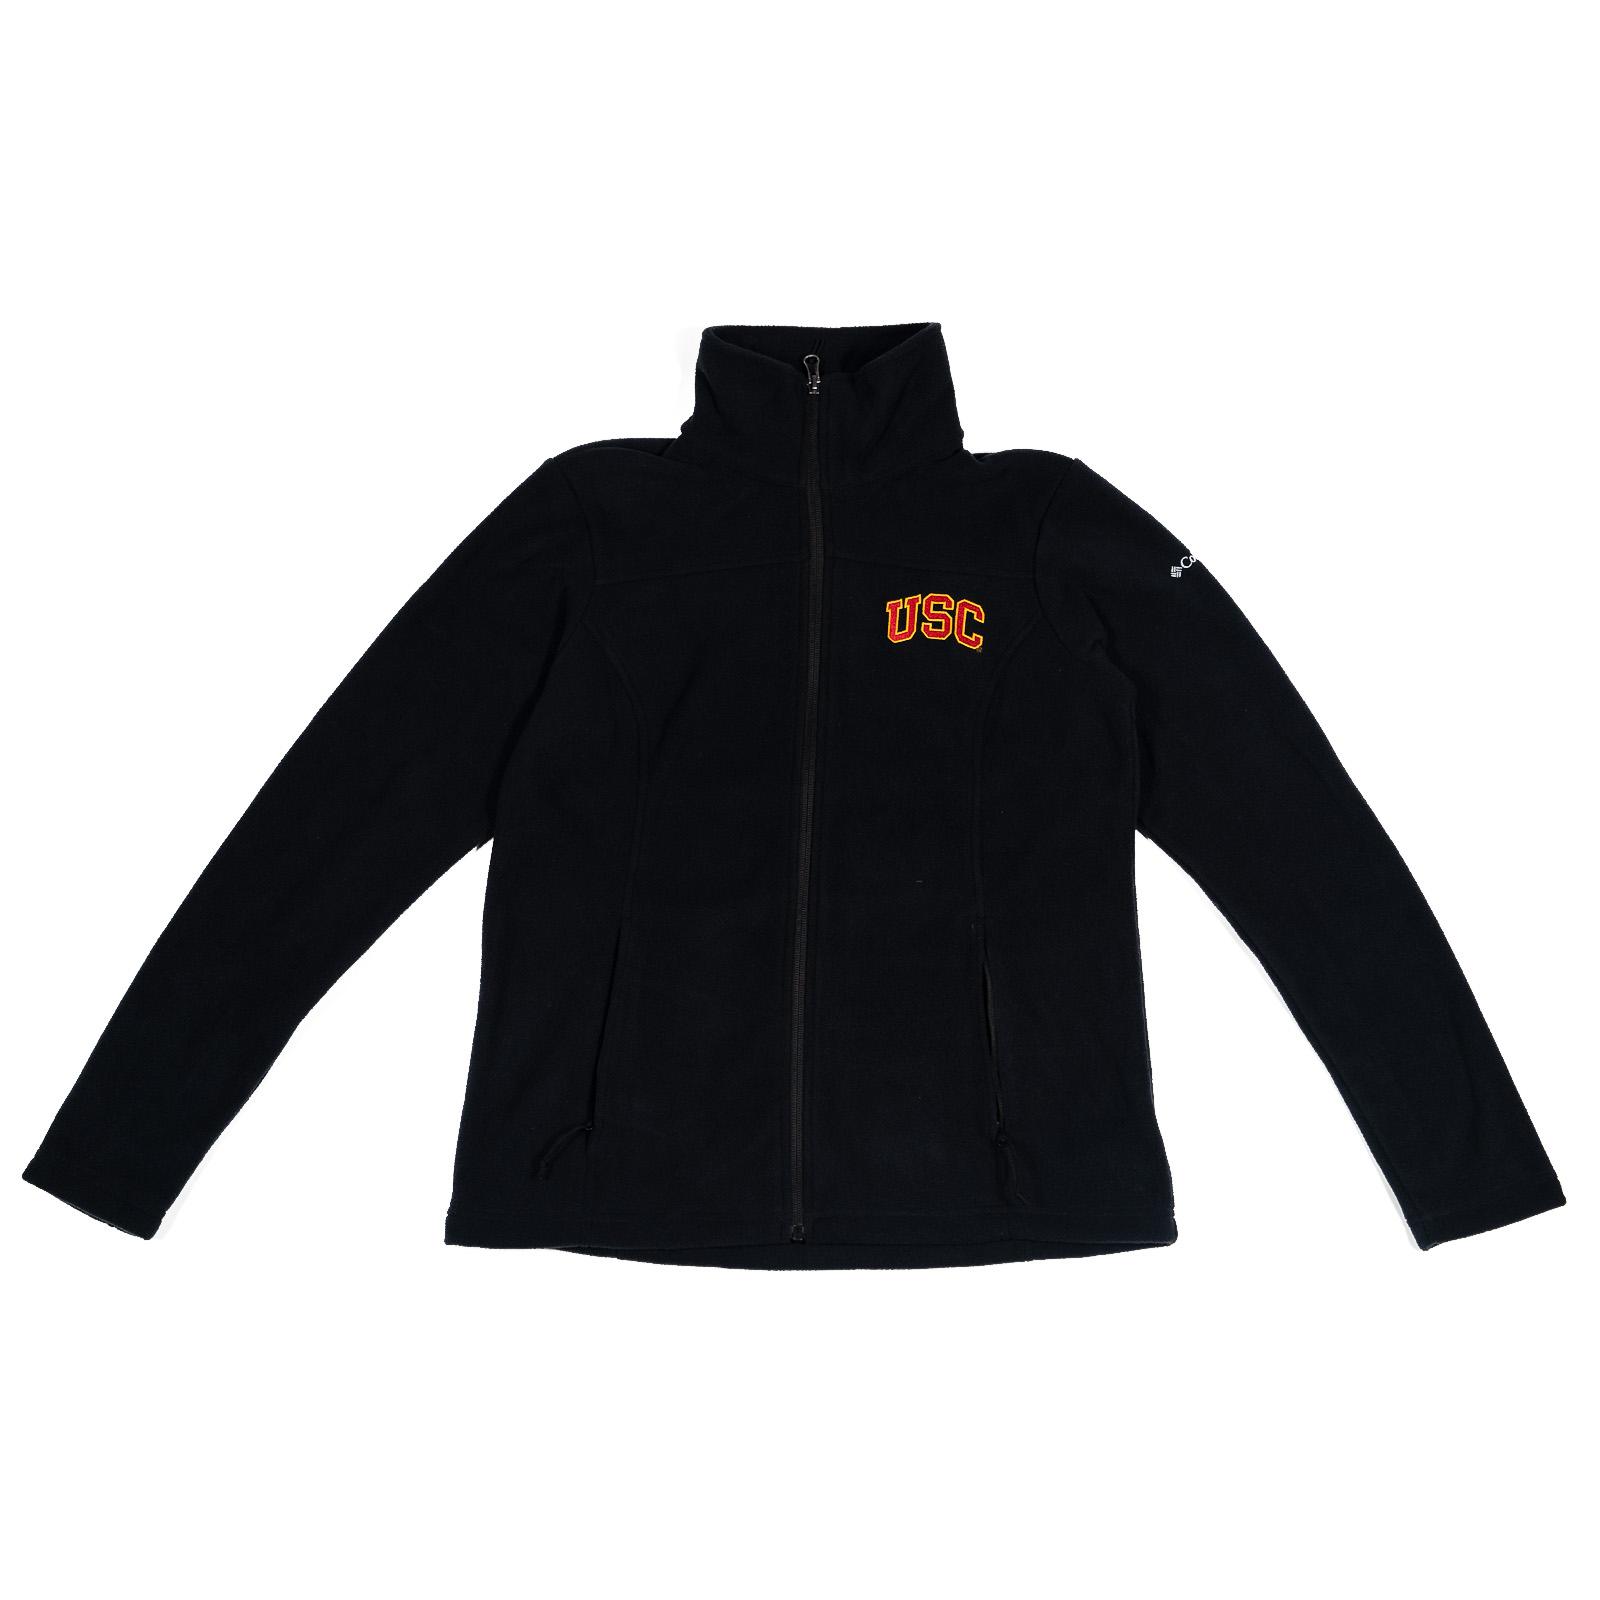 USC Womens Give & Go II Full Zip Fleece Jacket Black image01